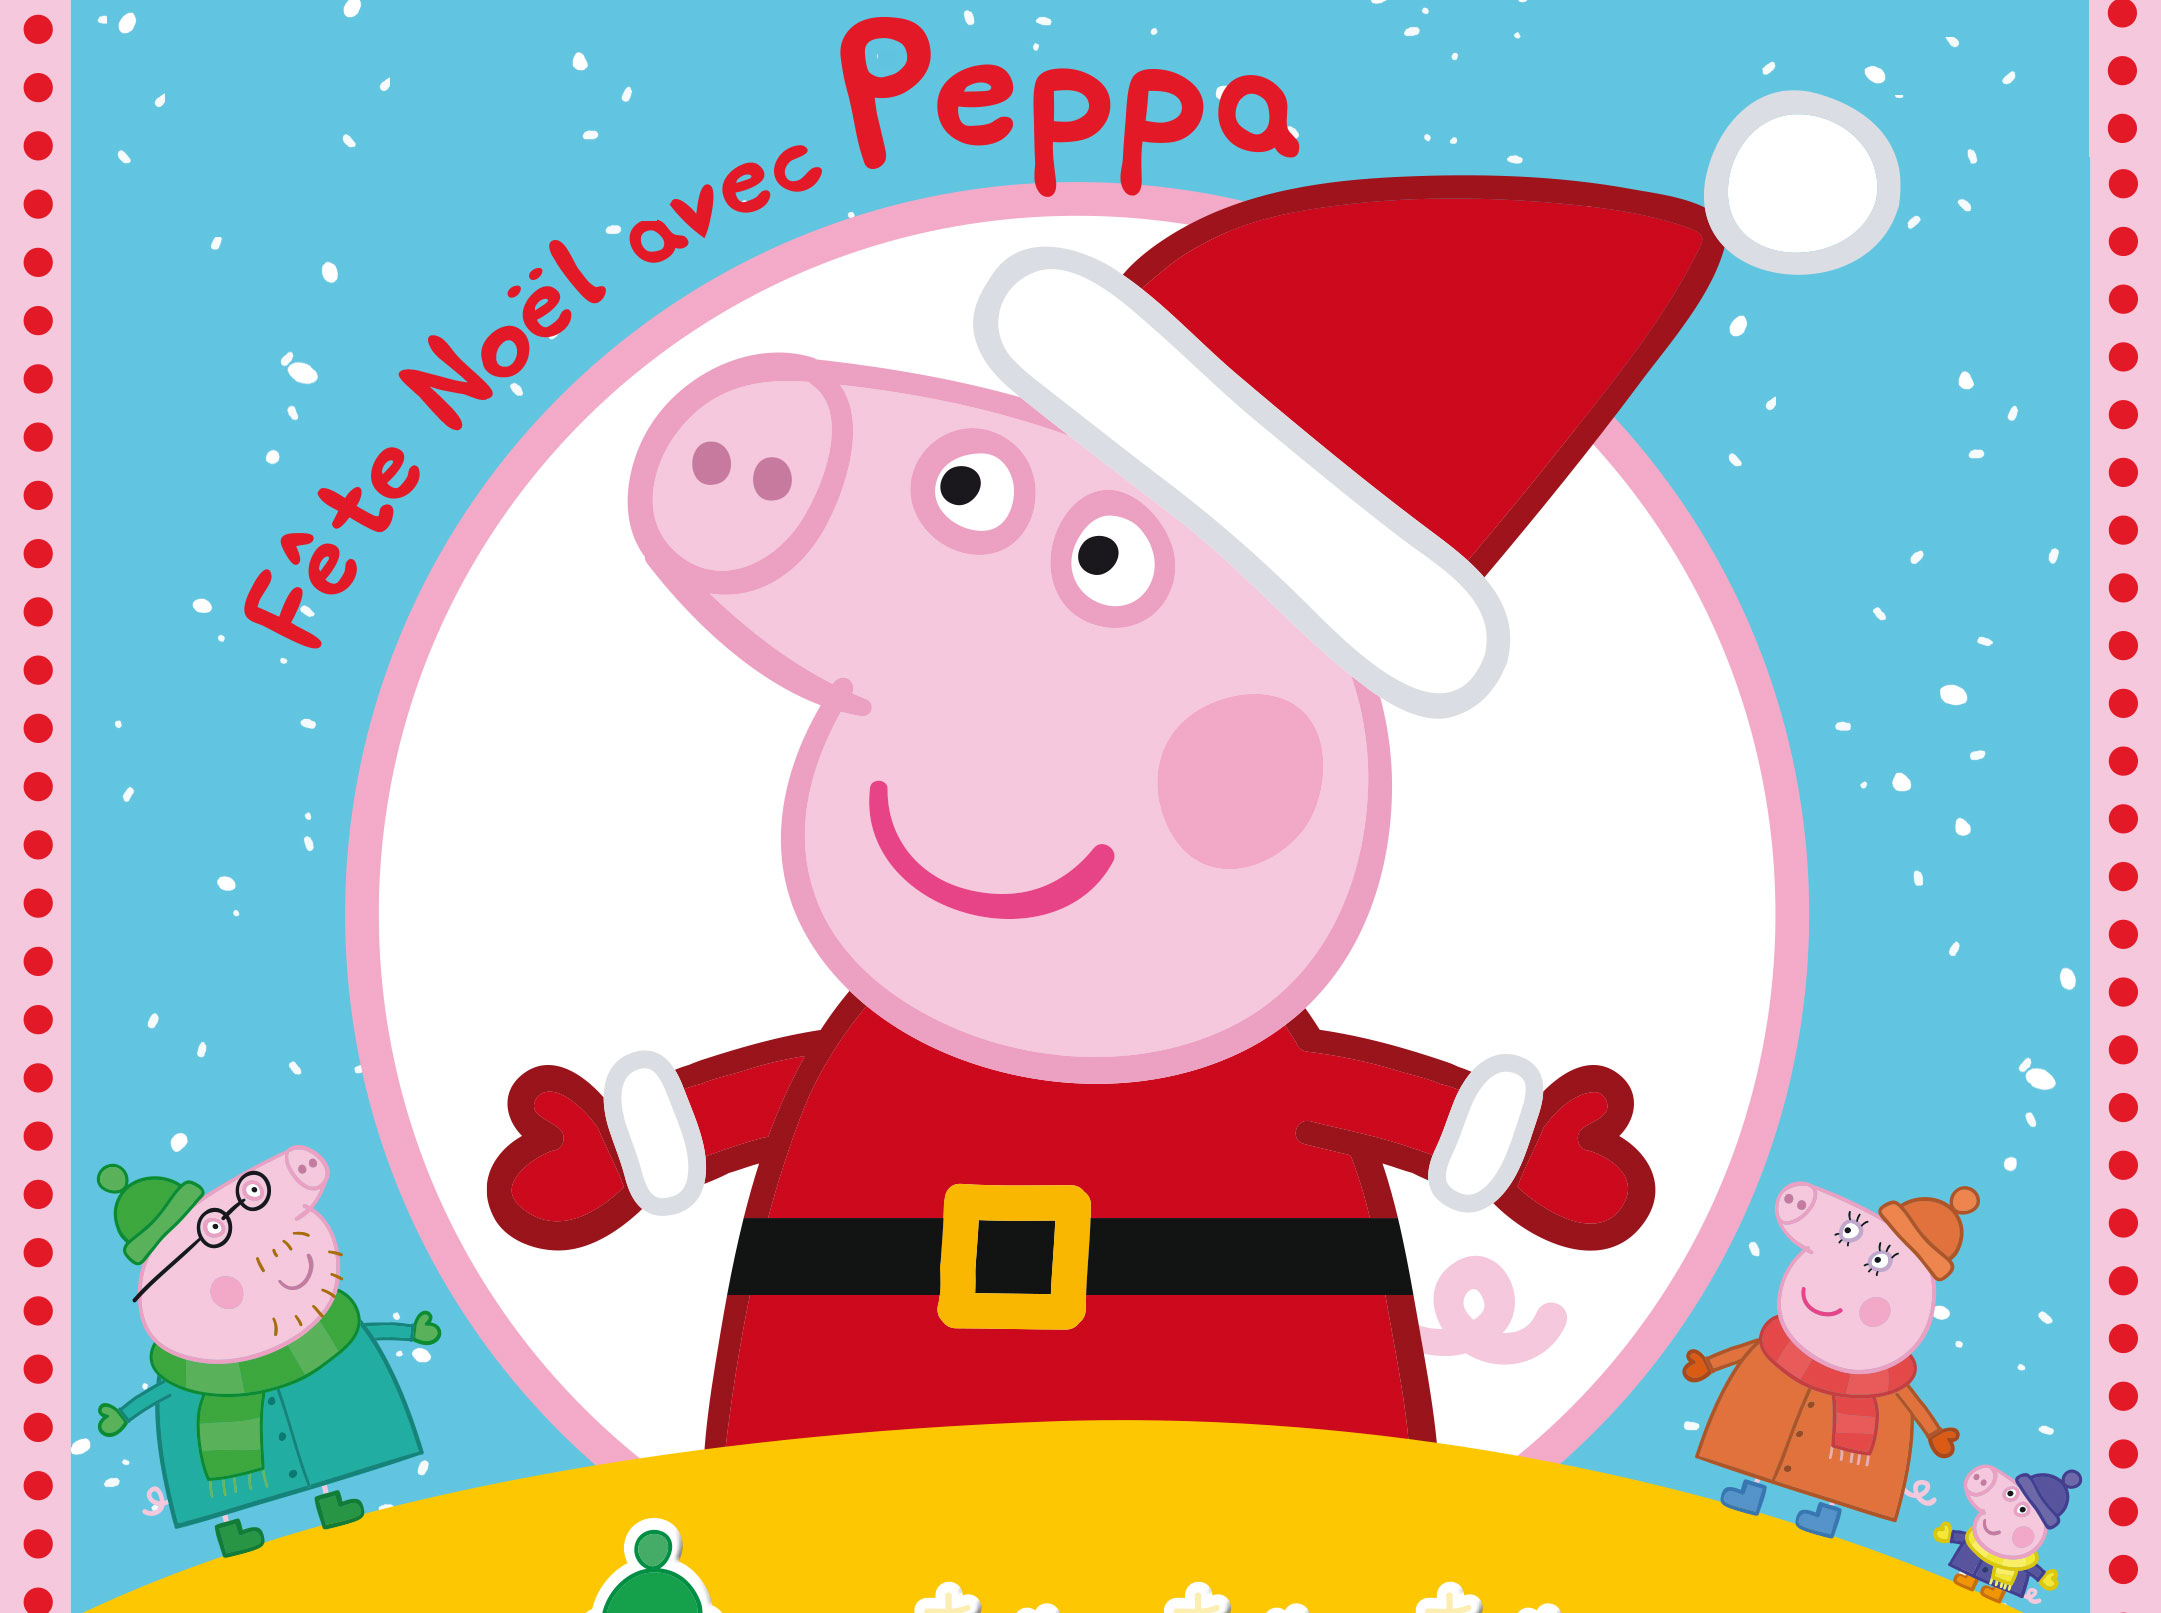 Livre Peppa Pig de Noël